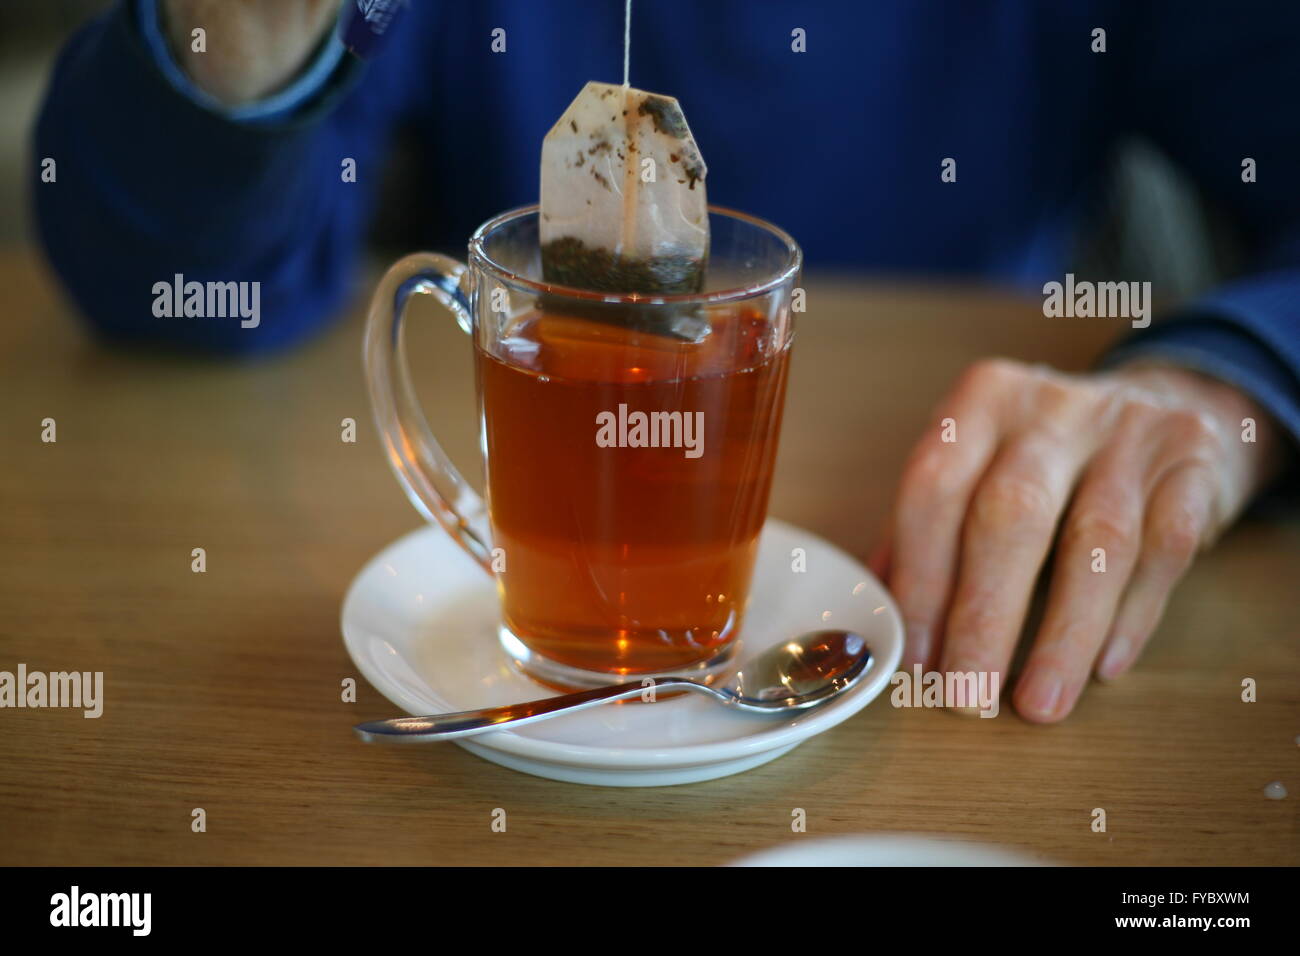 Photo d'un homme qui est en train de boire une tasse de thé, Bonn, Allemagne Banque D'Images